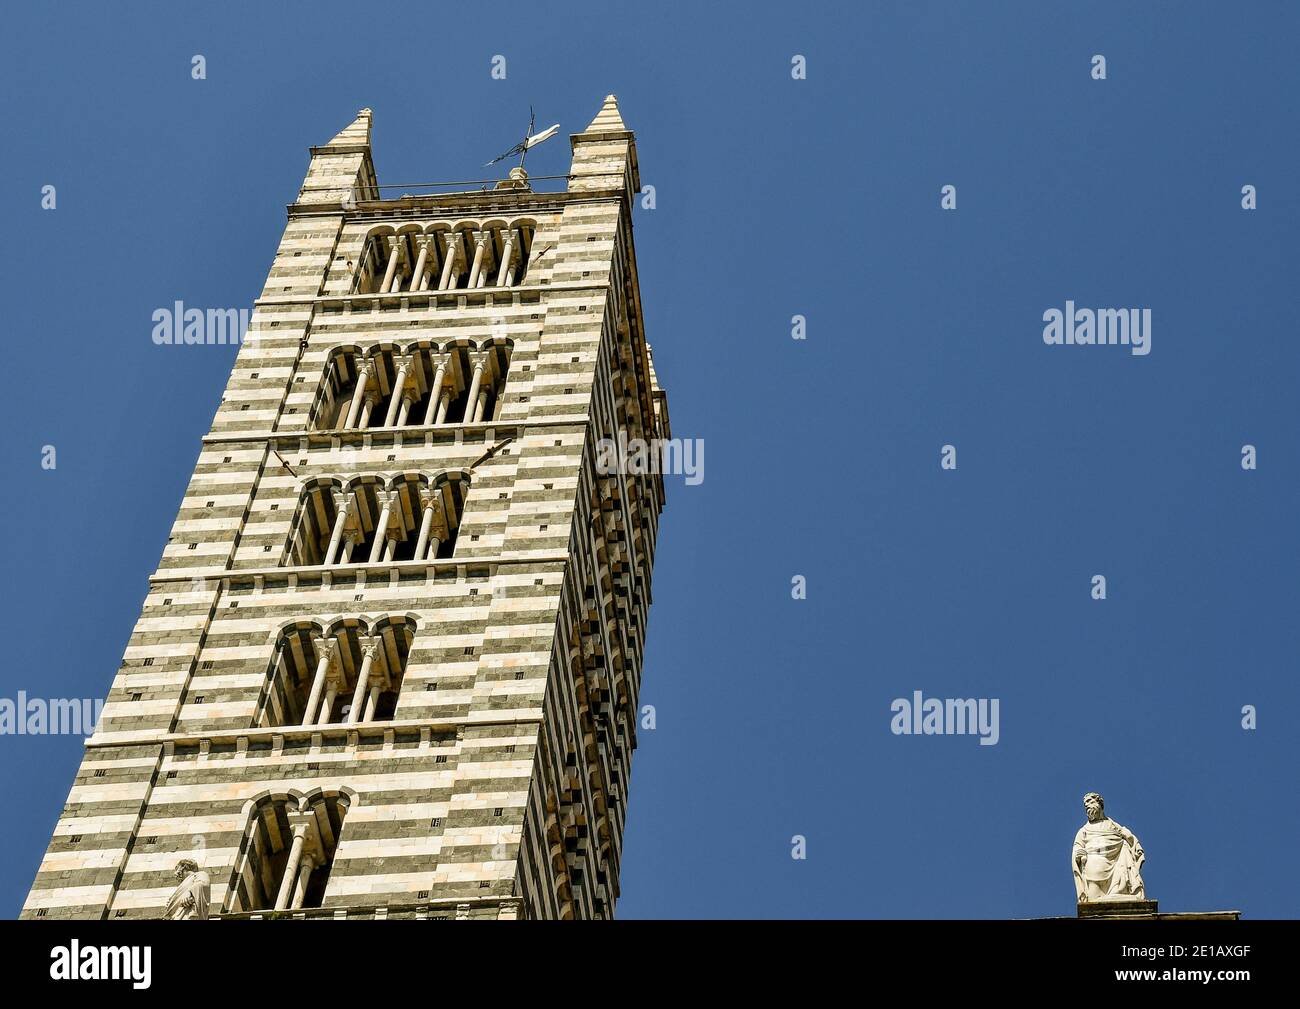 Clocher de la cathédrale de Sienne (XIVe siècle) de style roman, avec des bandes de marbre blanc et vert, site classé au patrimoine mondial de l'UNESCO, Toscane, Italie Banque D'Images